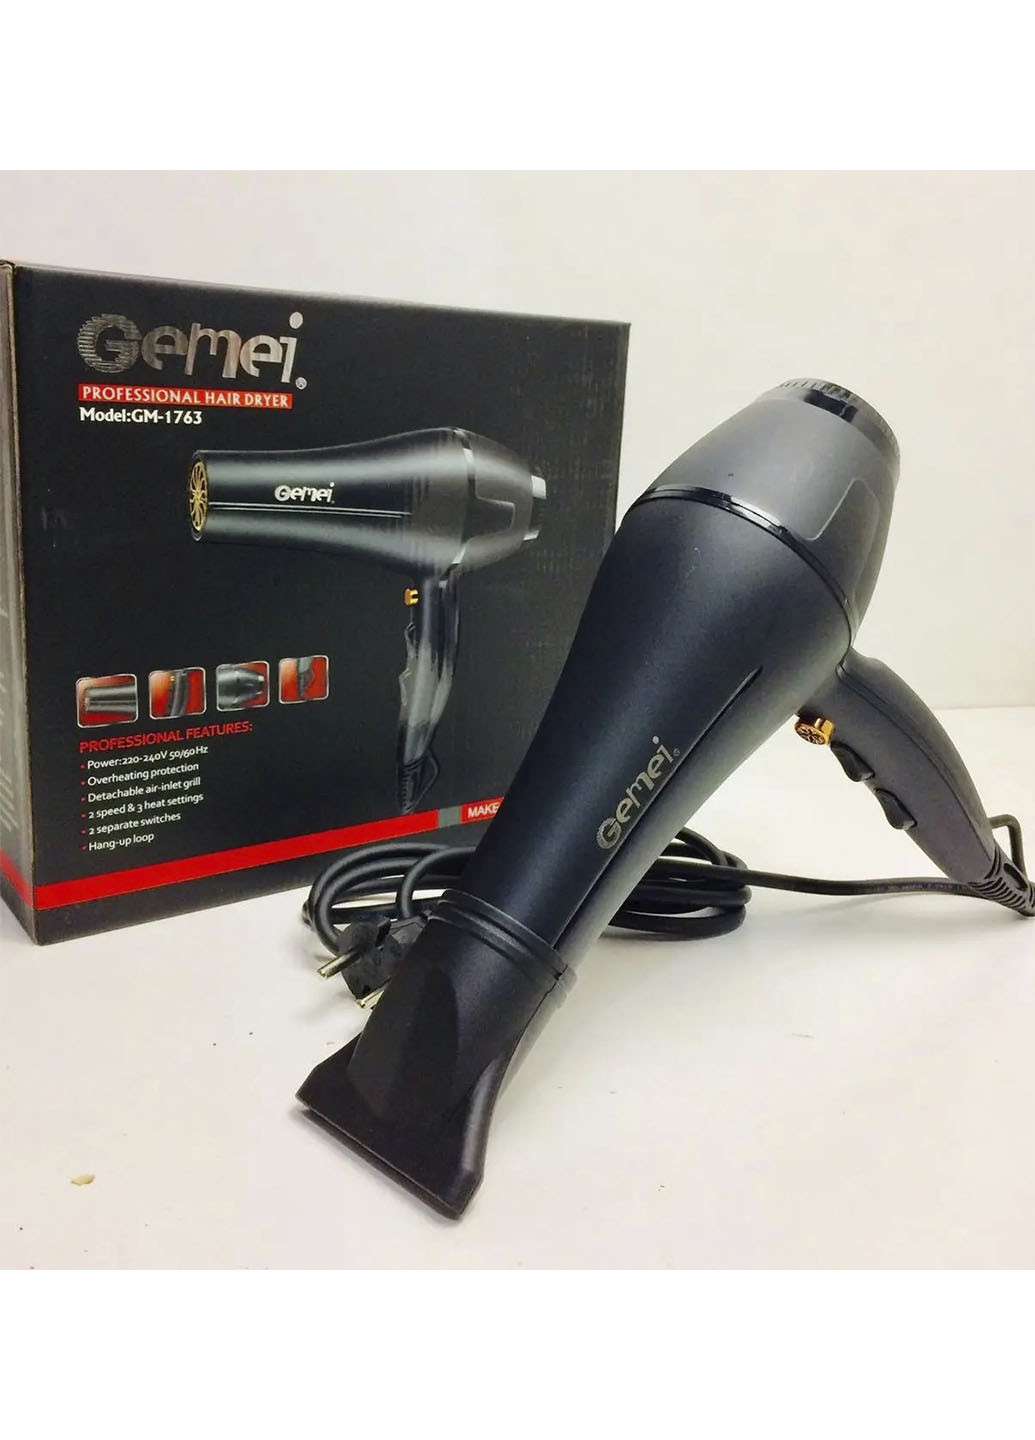 Профессиональный фен для волос классический Pro 2400W мощный фен для сушки и укладки Черный (1763А) Gemei gm-1763 (256671220)